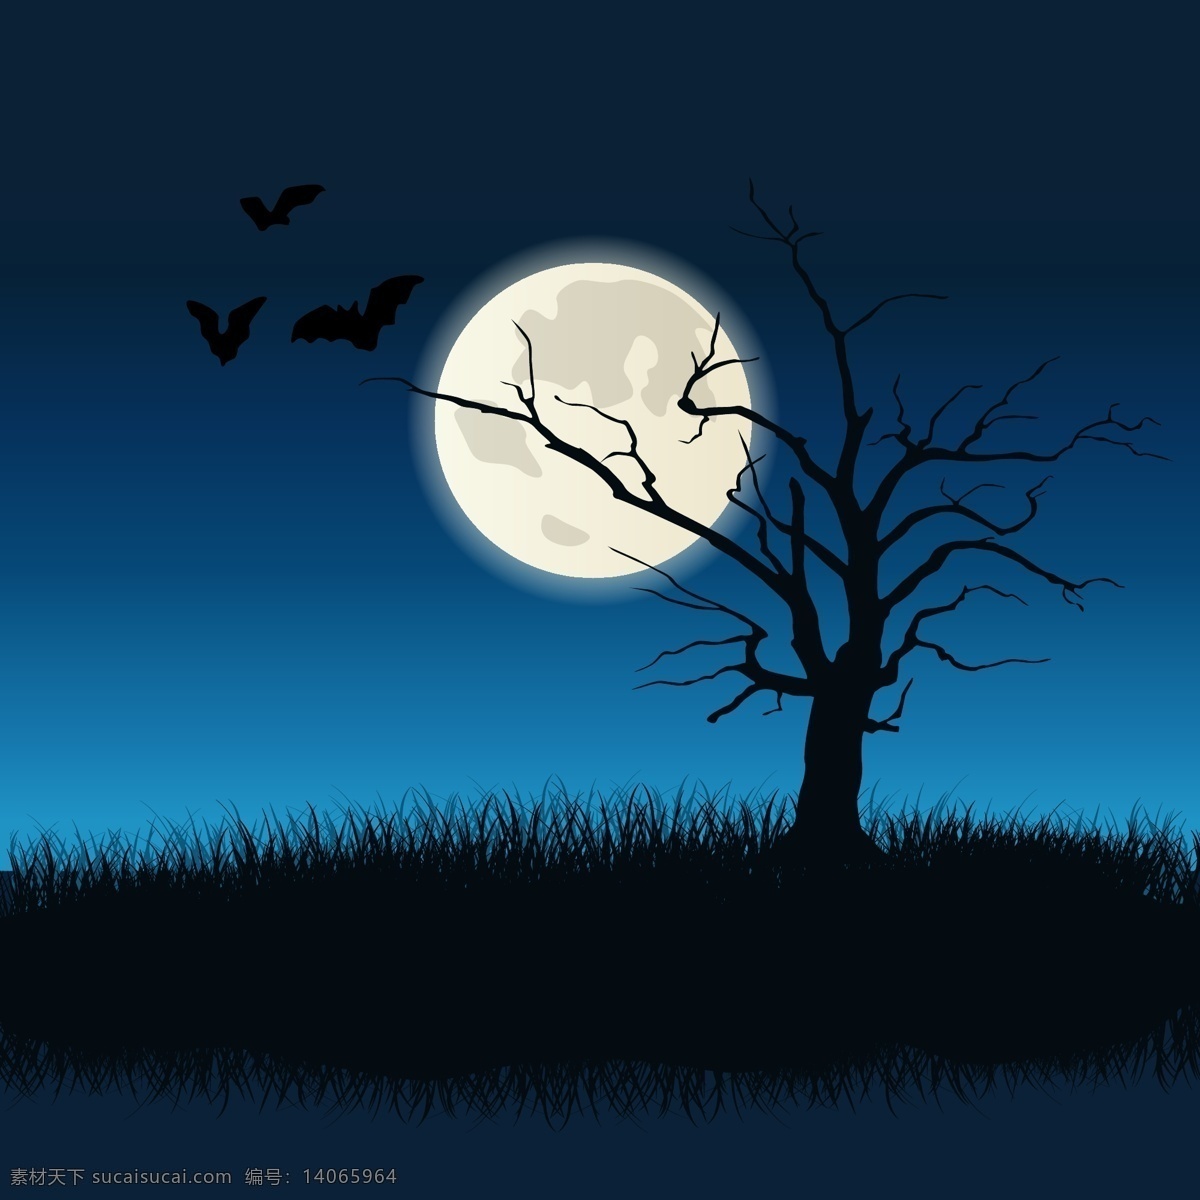 月黑风高 夜晚 月亮 枯树 草 晚上 蝙蝠 恐怖 黑色